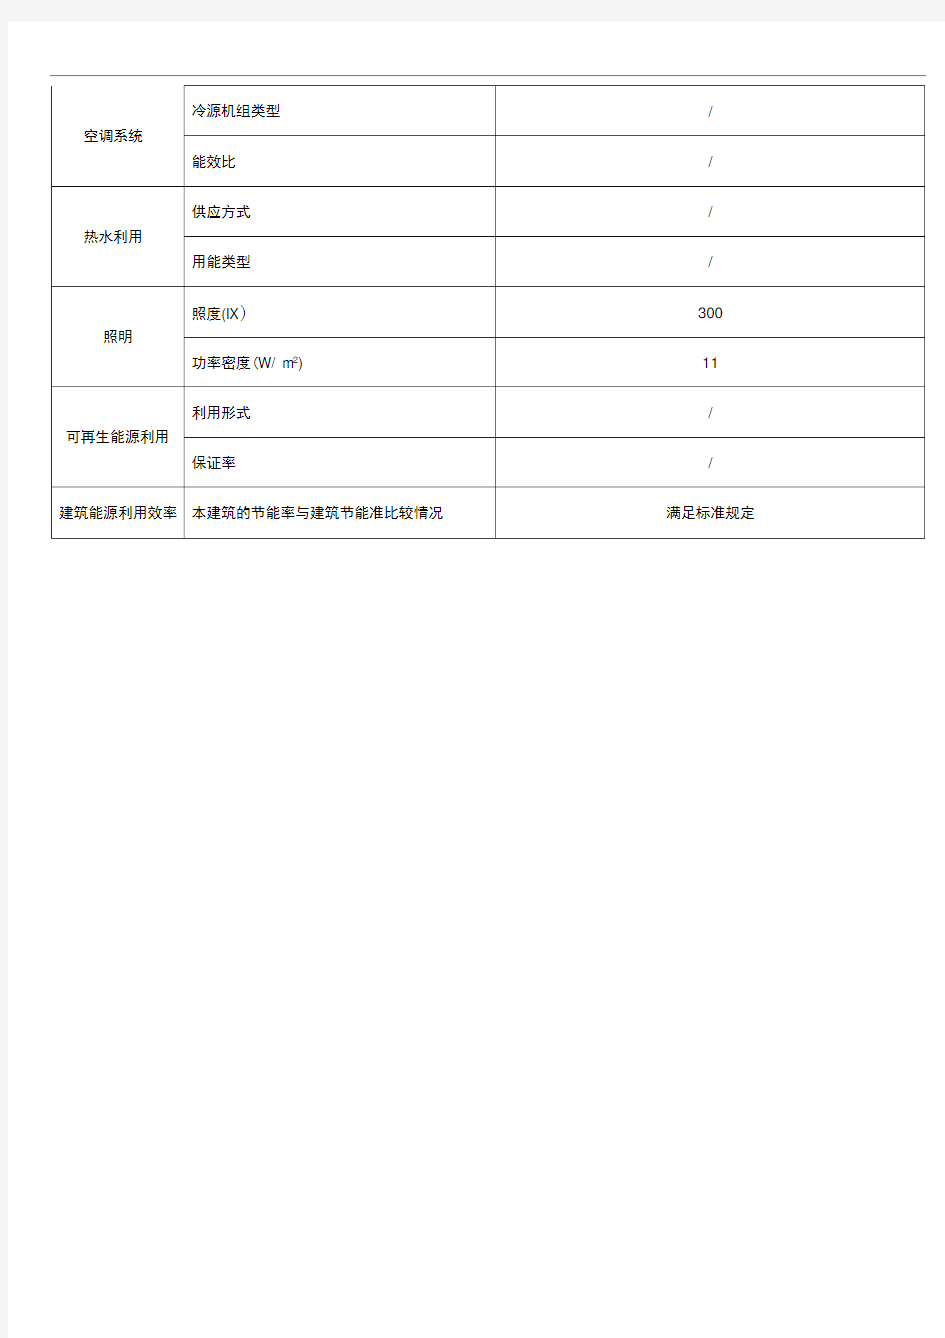 惠州市民用建筑节能信息施工现场公示表